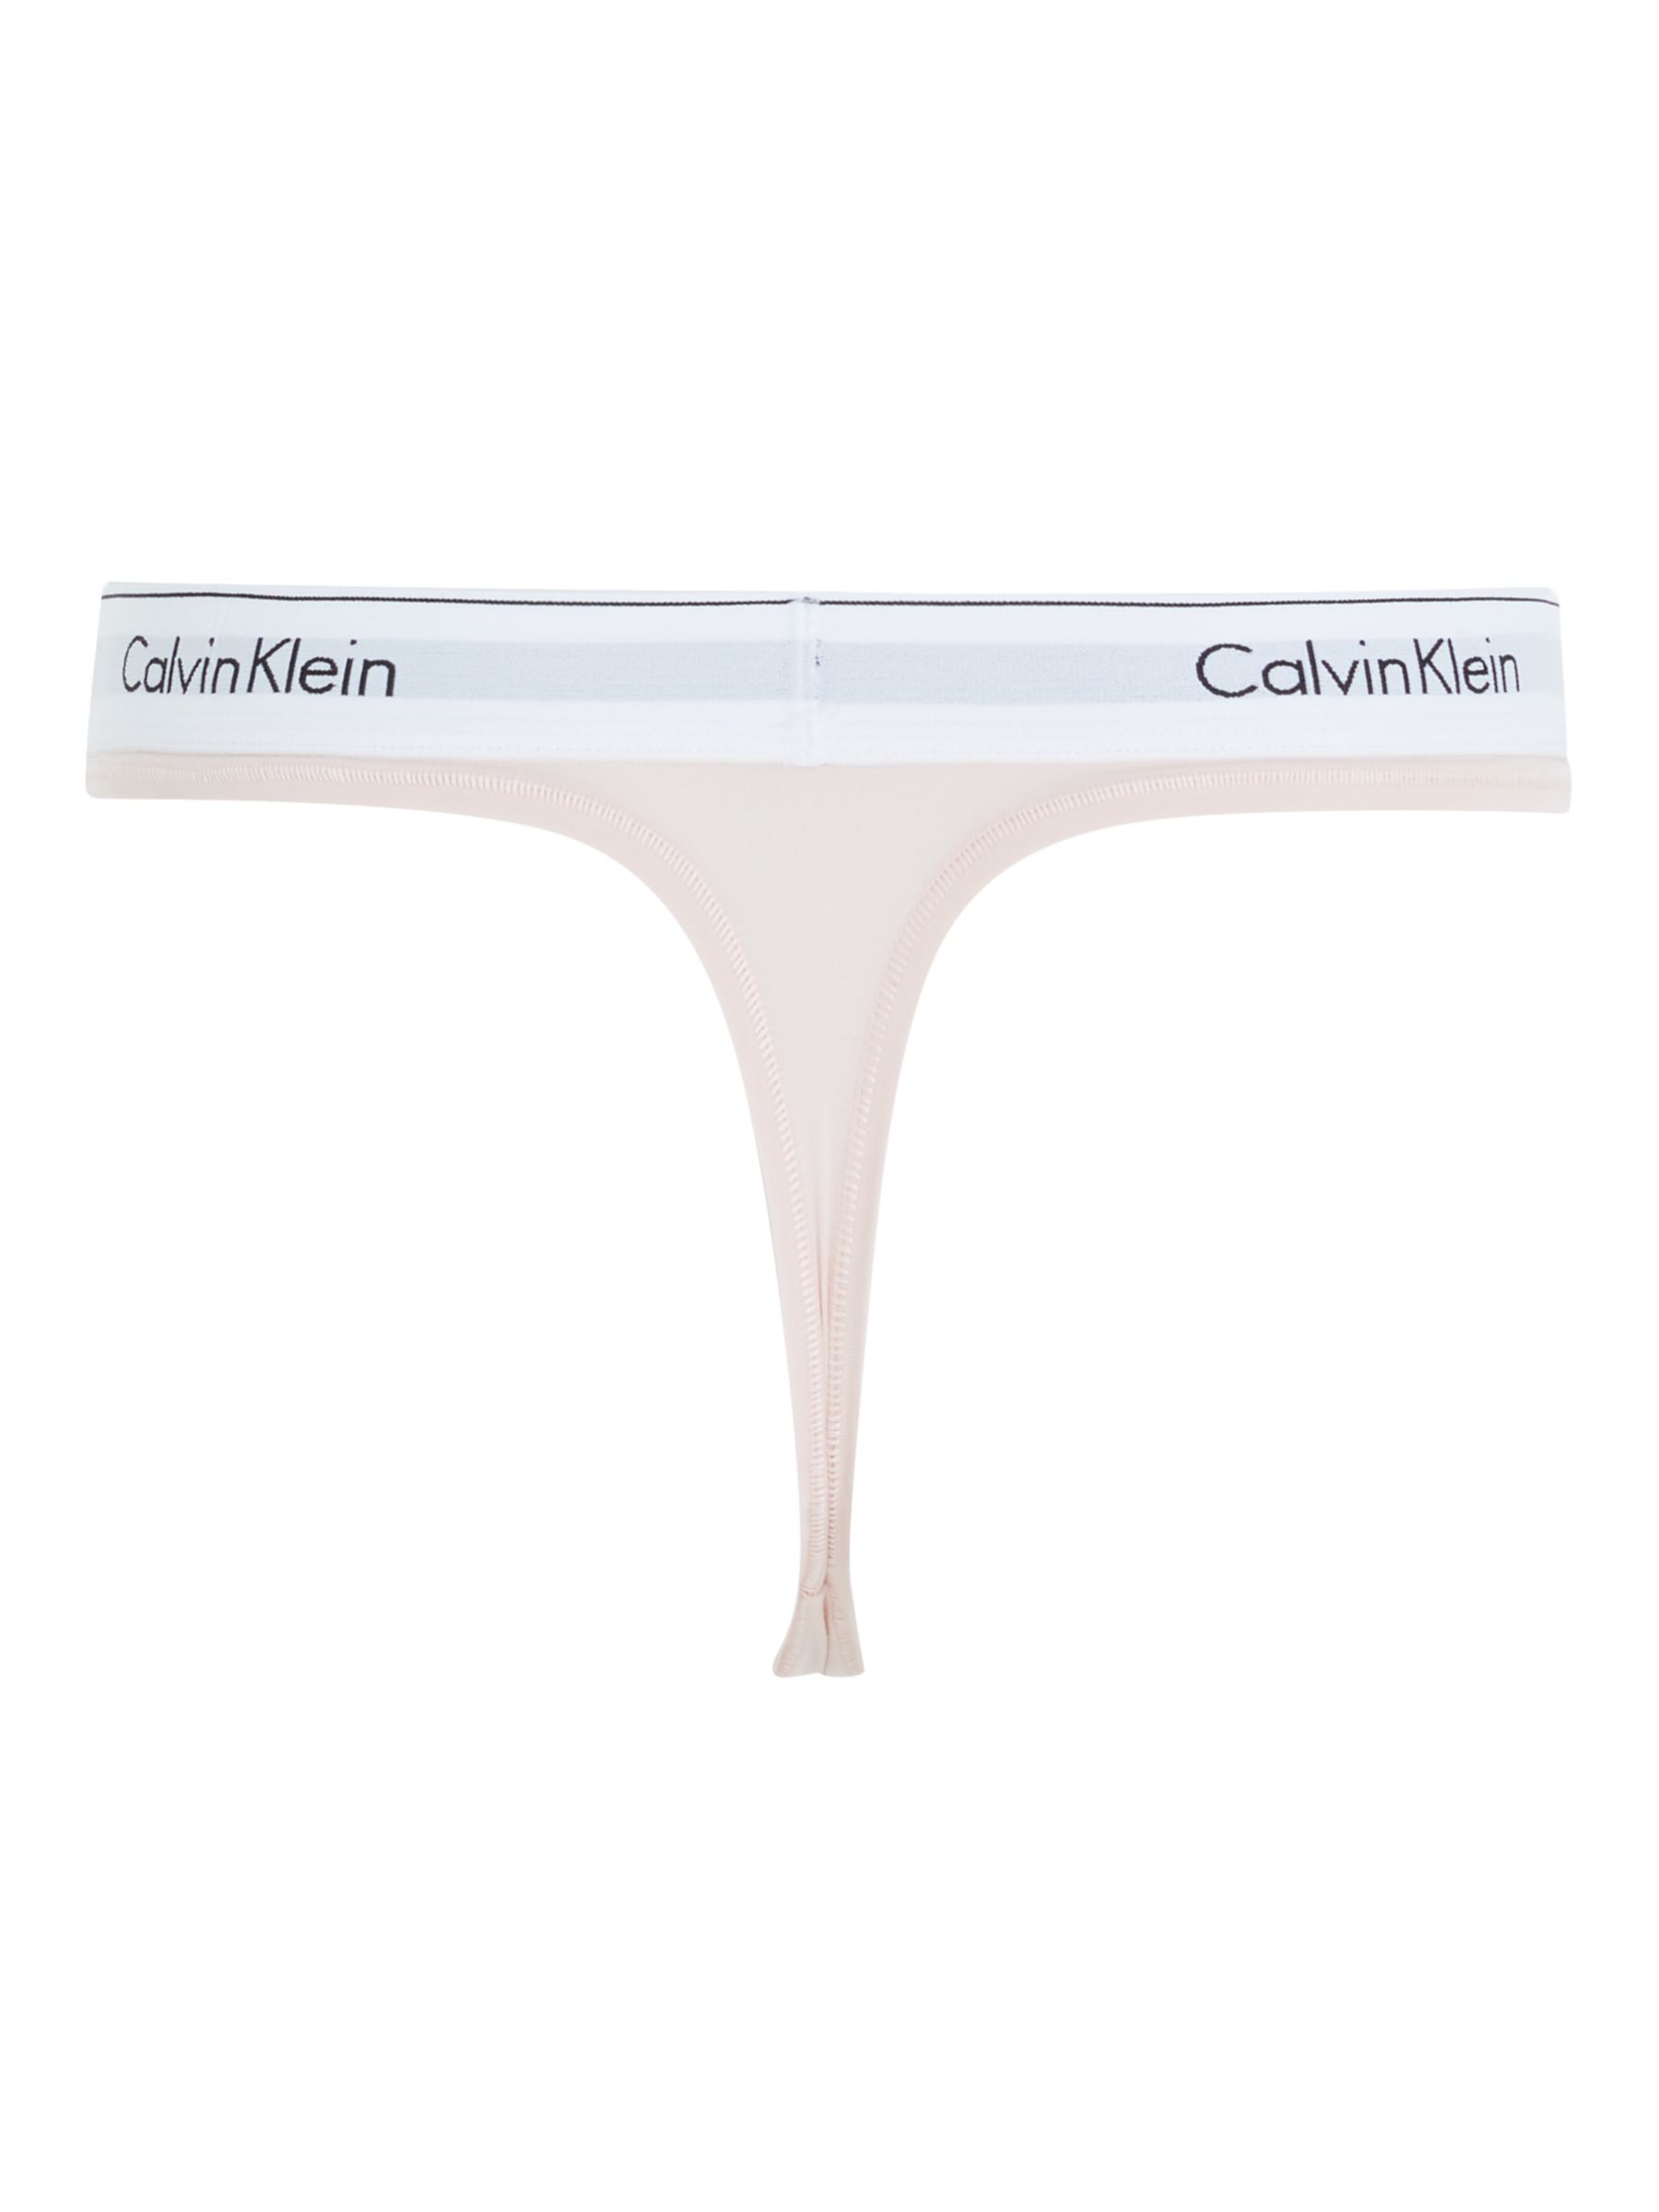 Calvin Klein Modern Cotton Thong, White at John Lewis & Partners